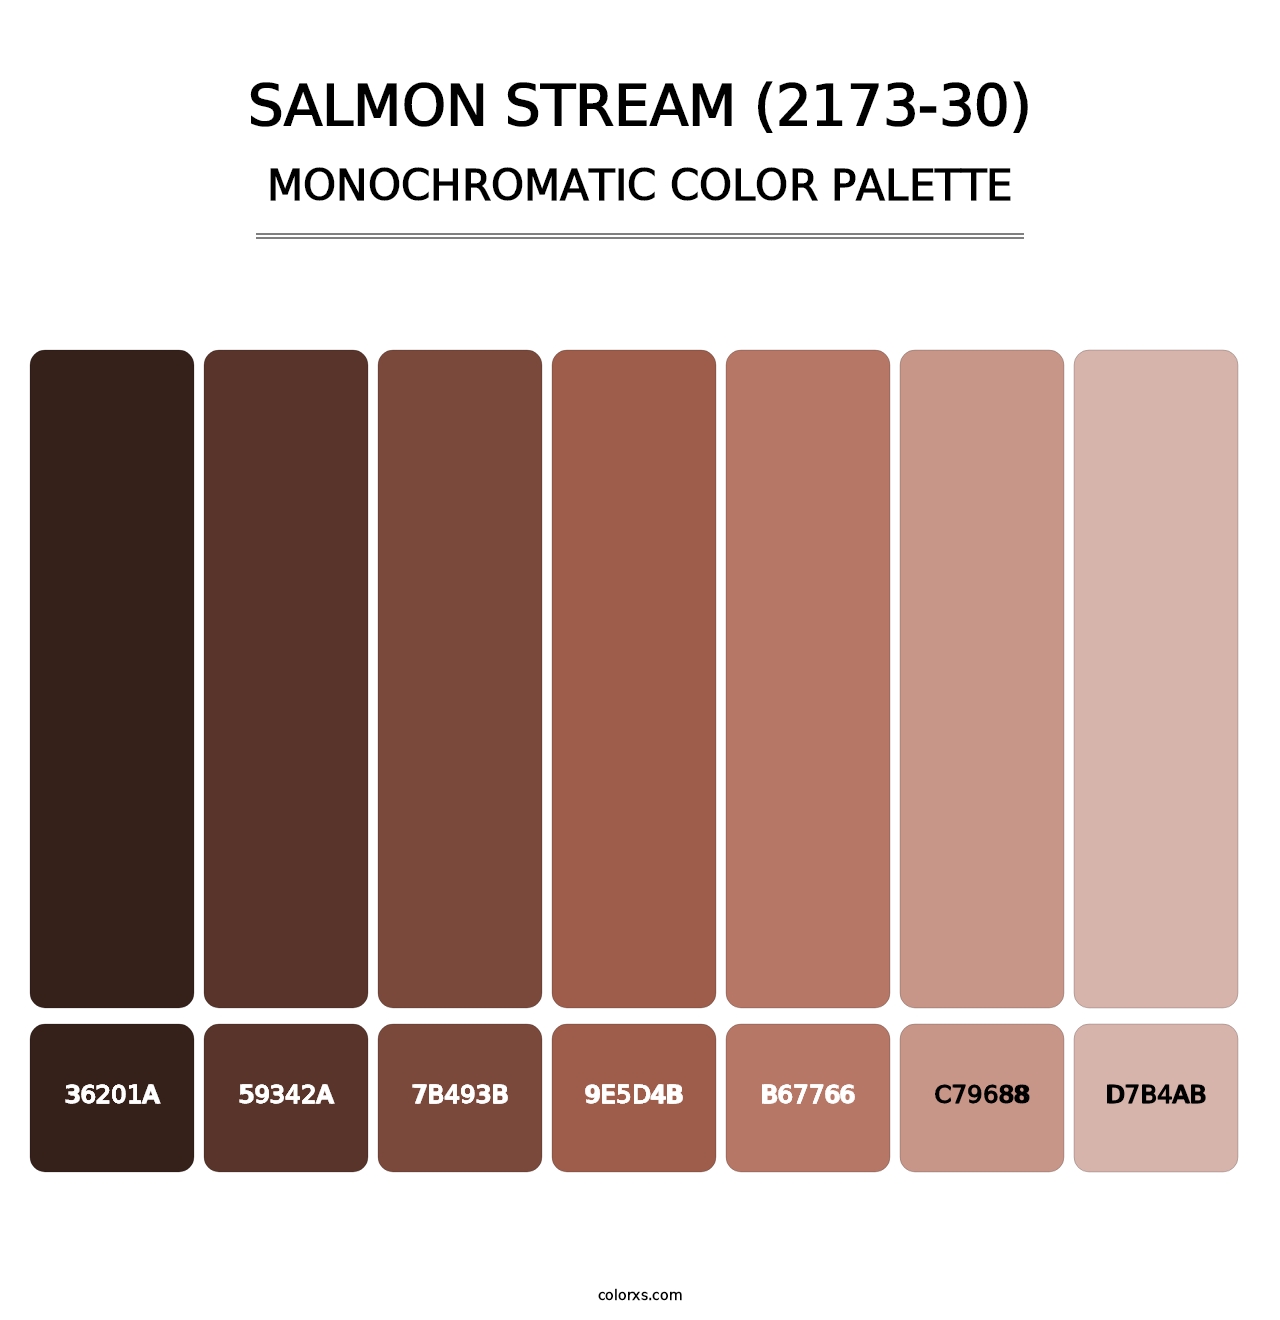 Salmon Stream (2173-30) - Monochromatic Color Palette